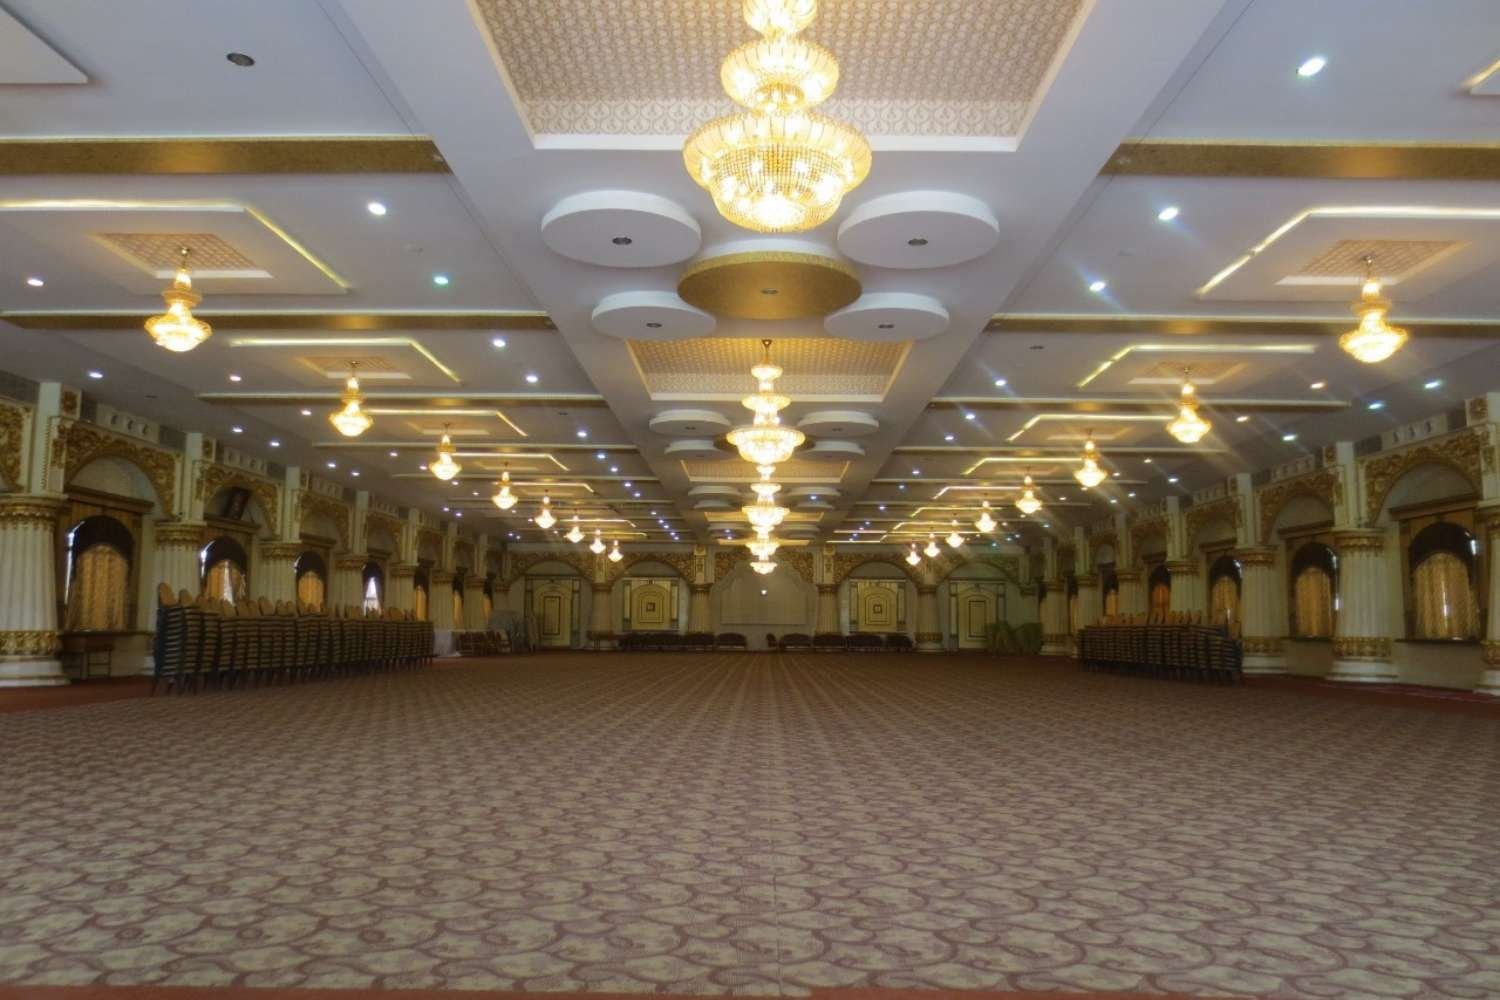 The majestic banquet hall at Royal Senate